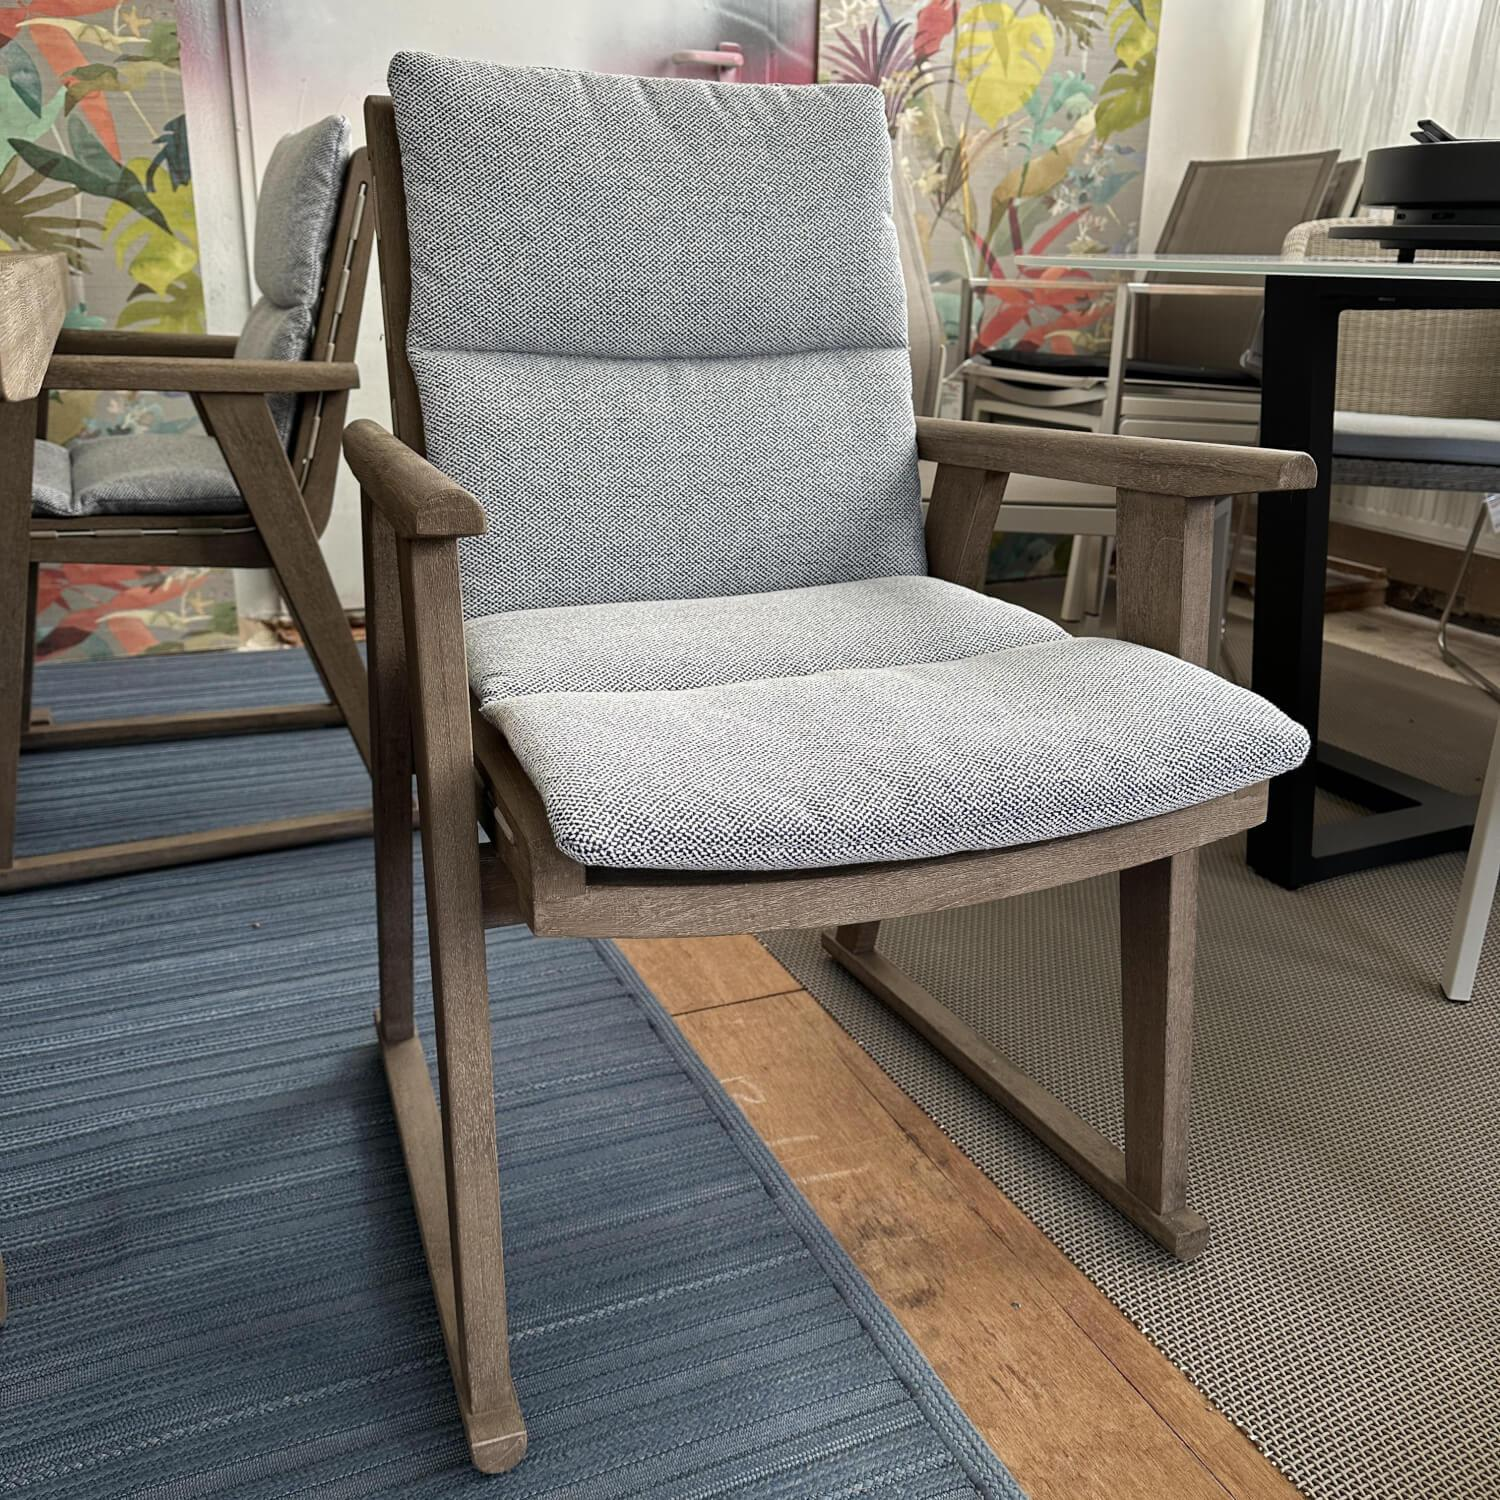 Essgruppe Gio Outdoor Teak Antique Grey Stühle Bezug Stoff Ecate Blau Weiß